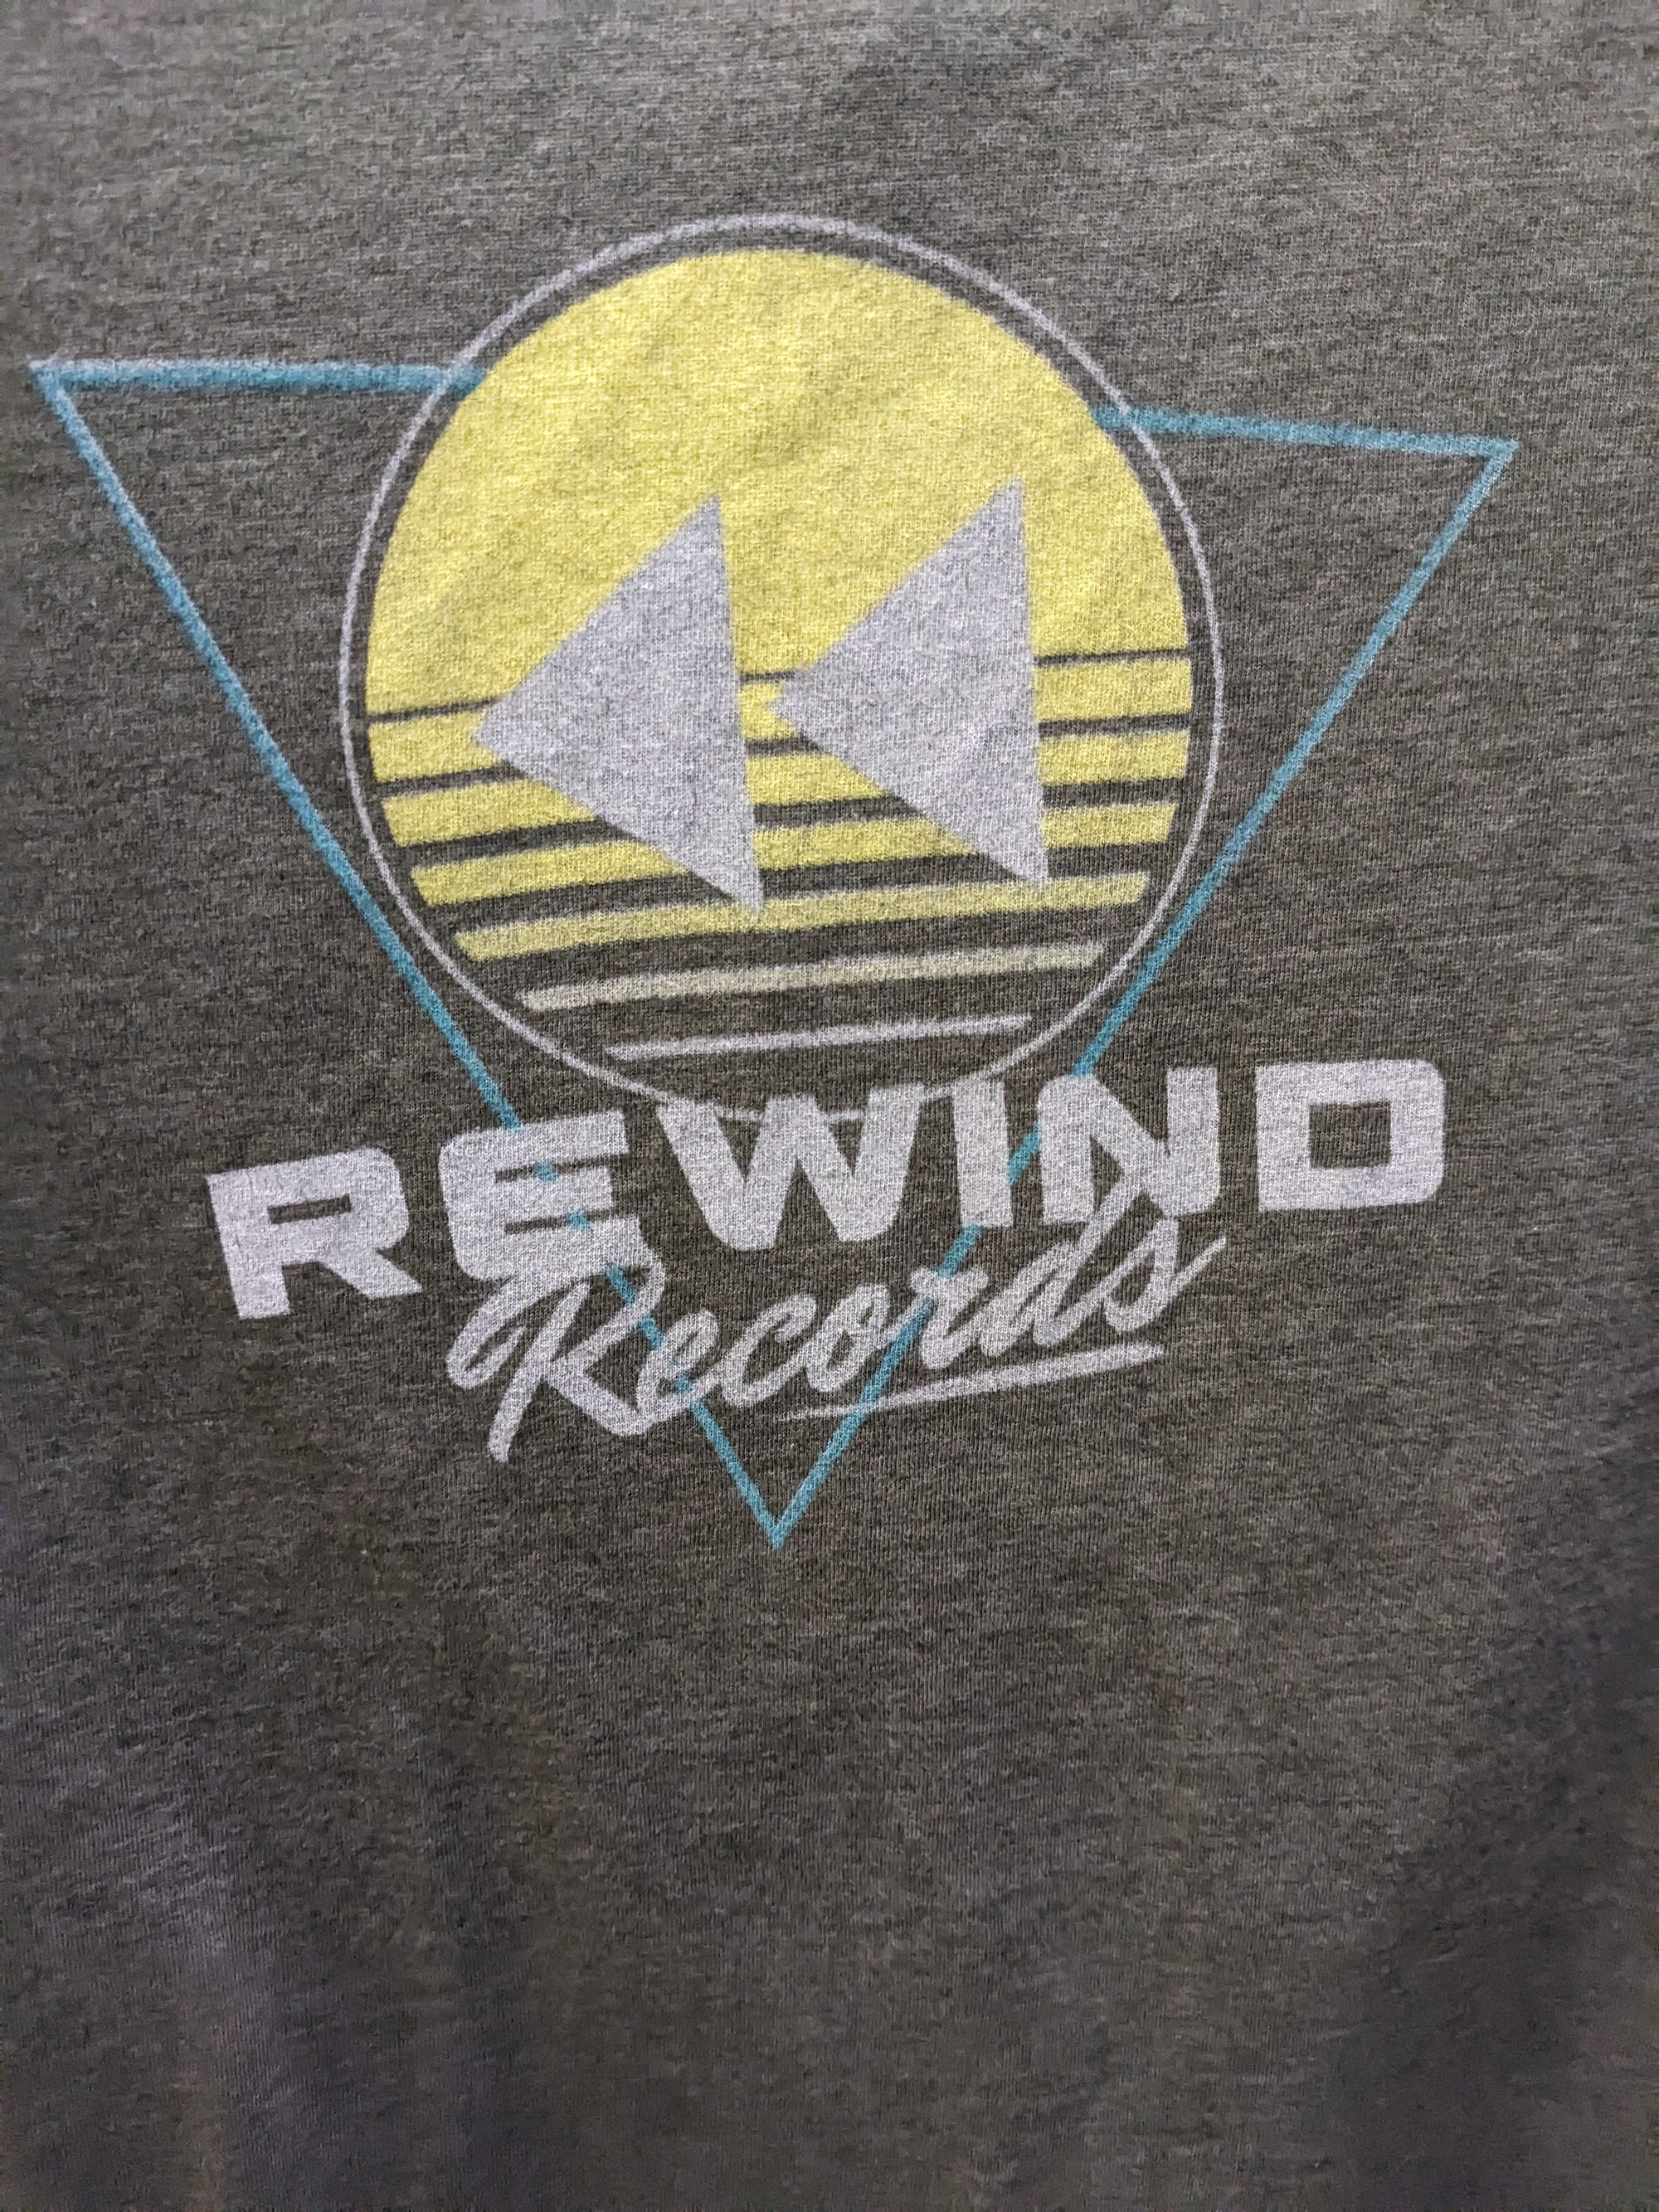 Rewind Records - Small